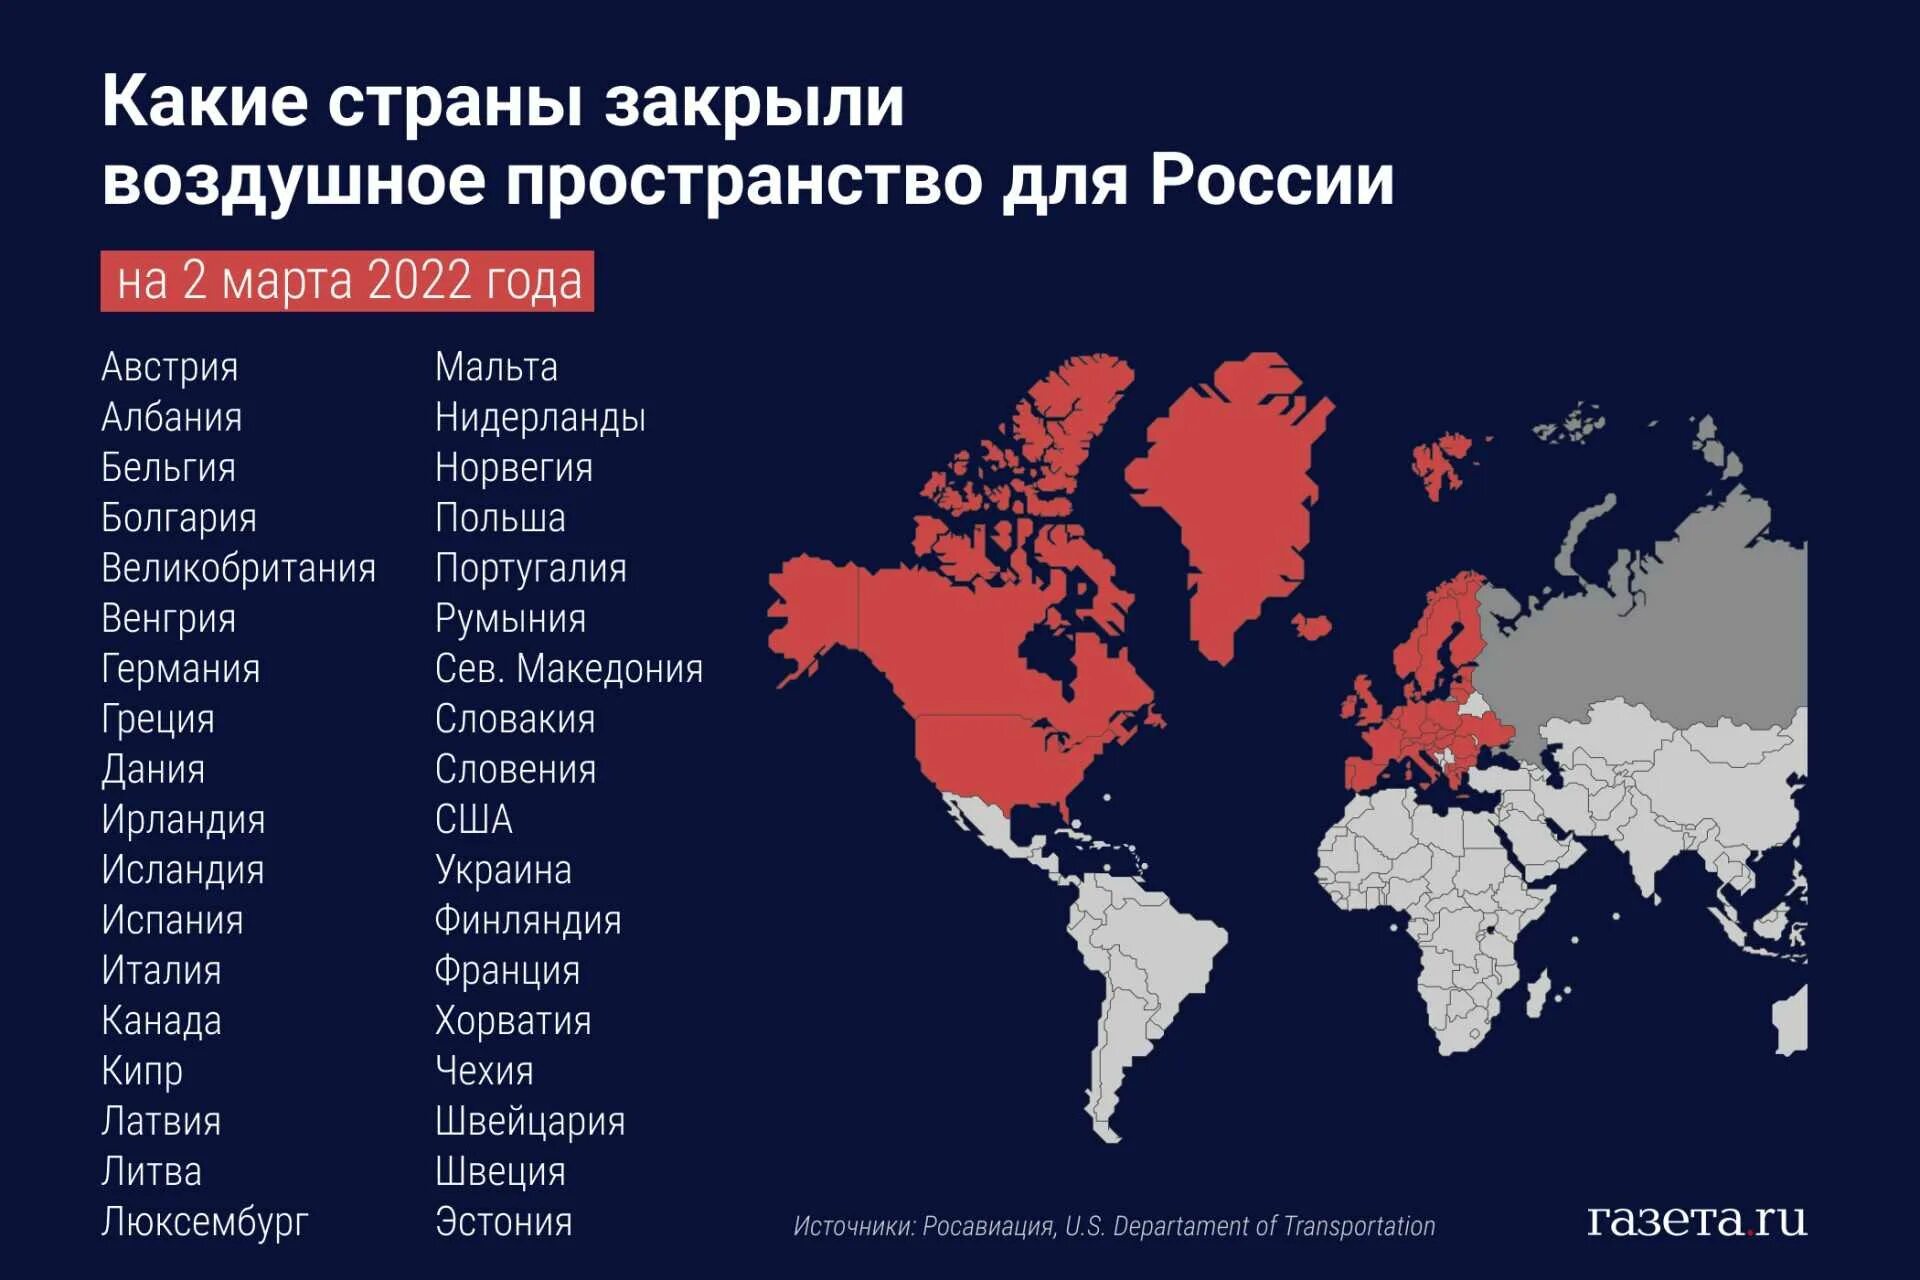 Закрытие воздушного пространства для России. Закрытое воздушное пространство для России. Какие страны закрыли воздушное пространство. Карта стран которые закрыли воздушное пространство. Назовите любую европейскую страну являющуюся крупным